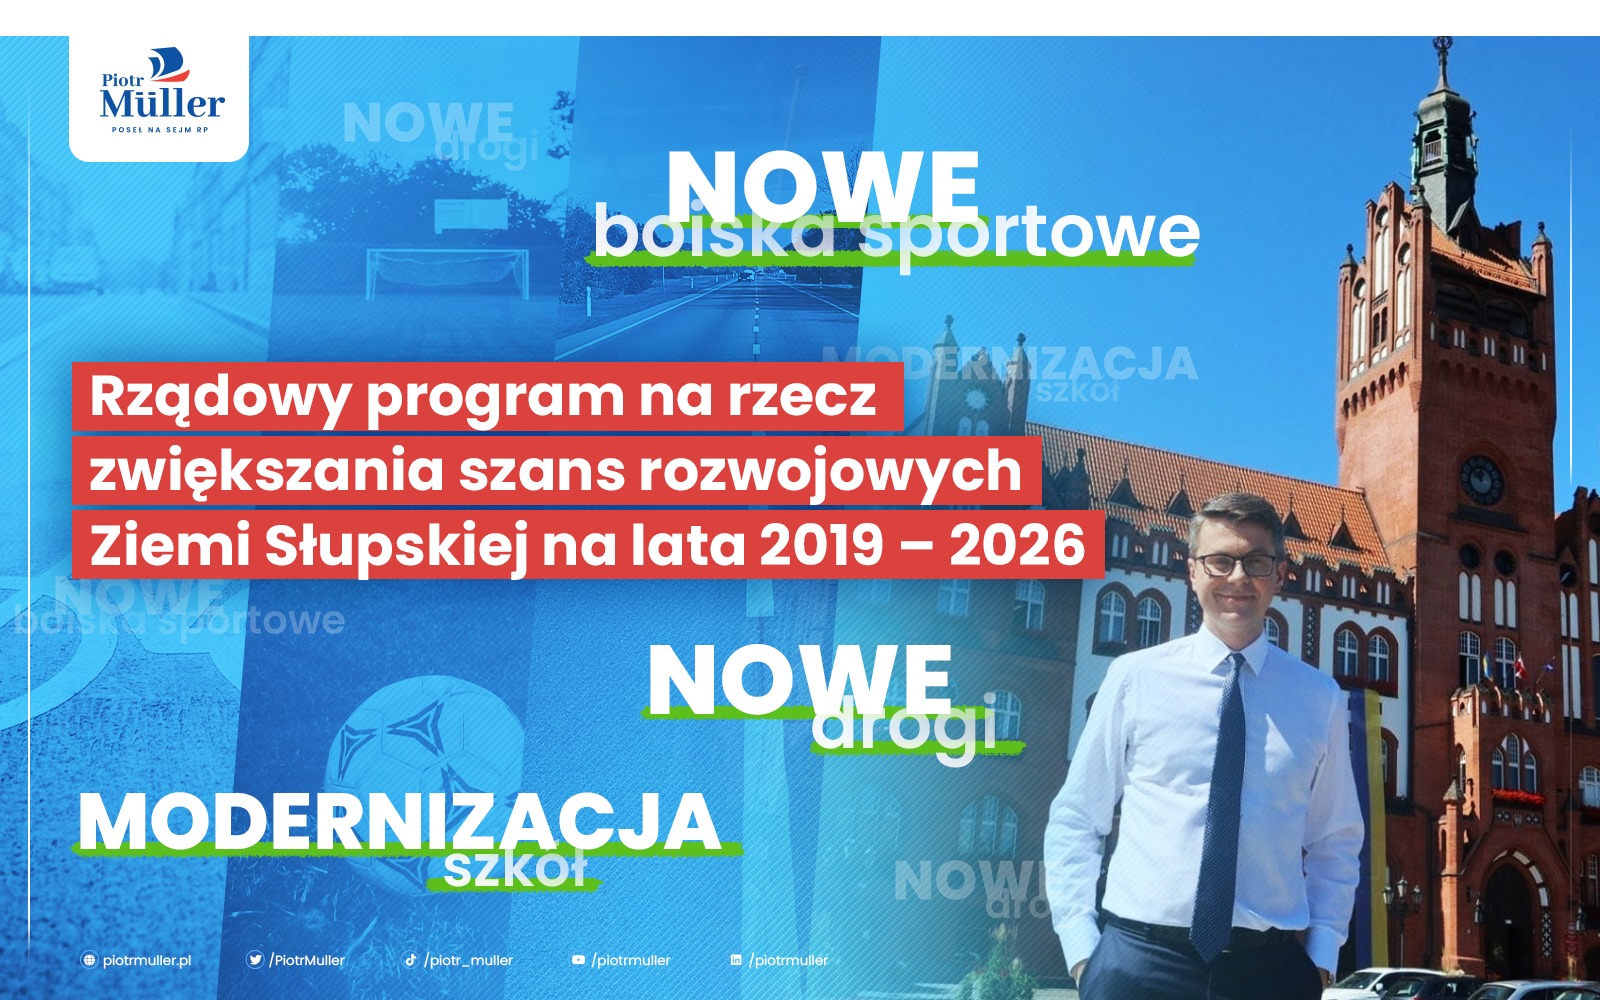 A to wszystko dzięki rządowemu programowi na rzecz zwiększania szans rozwojowych Ziemi Słupskiej na lata 2019 – 2026!